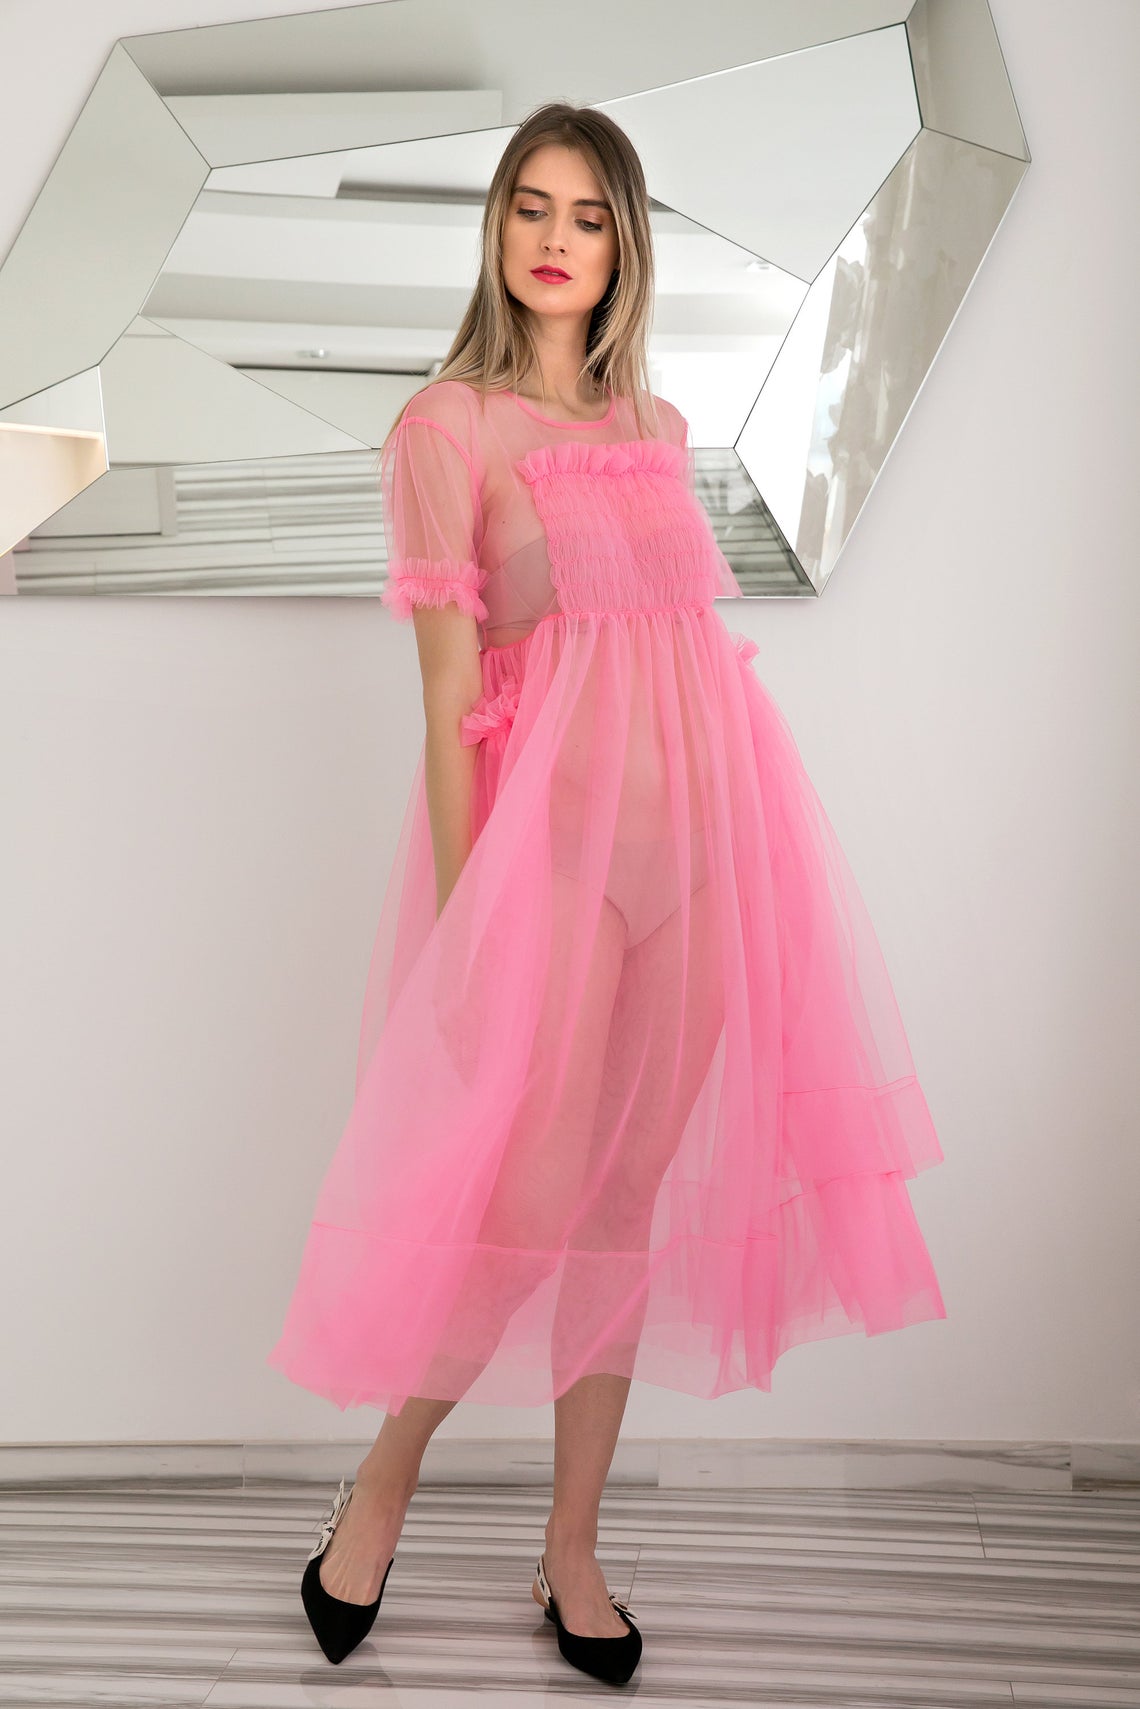 pink sheer dress